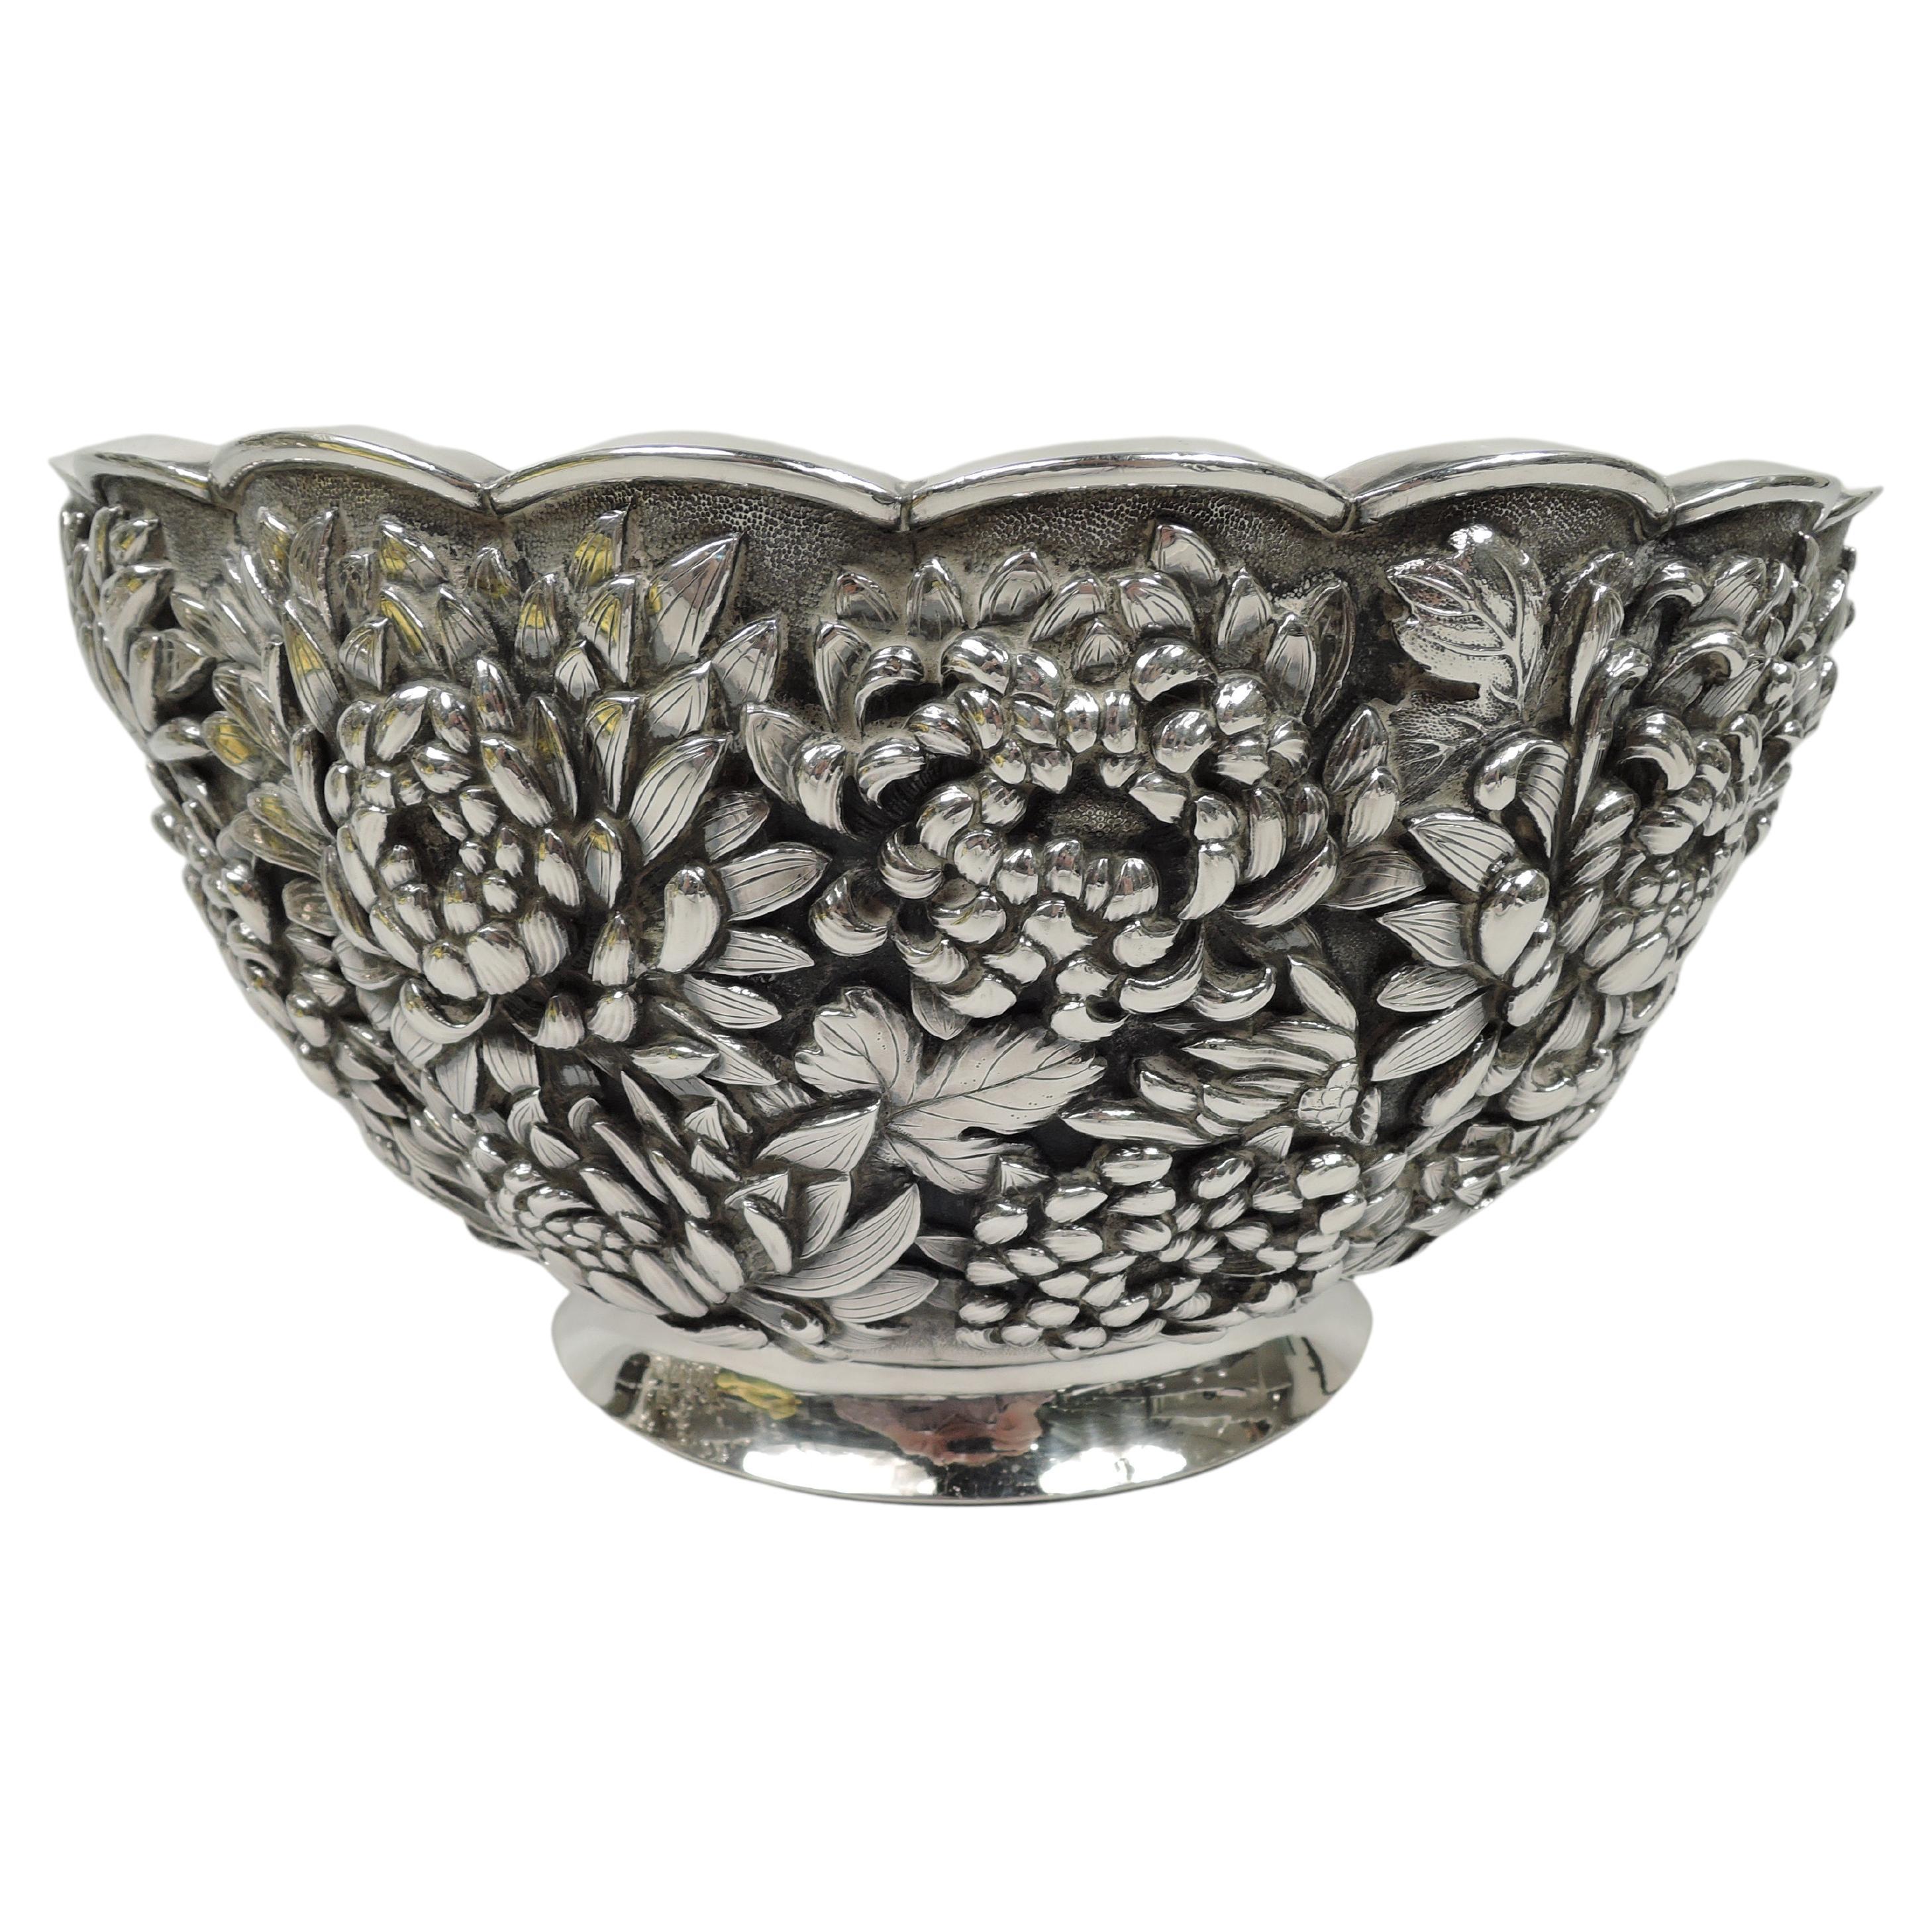 Large & Striking Japanese Meiji Silver Chrysanthemum Centerpiece Bowl